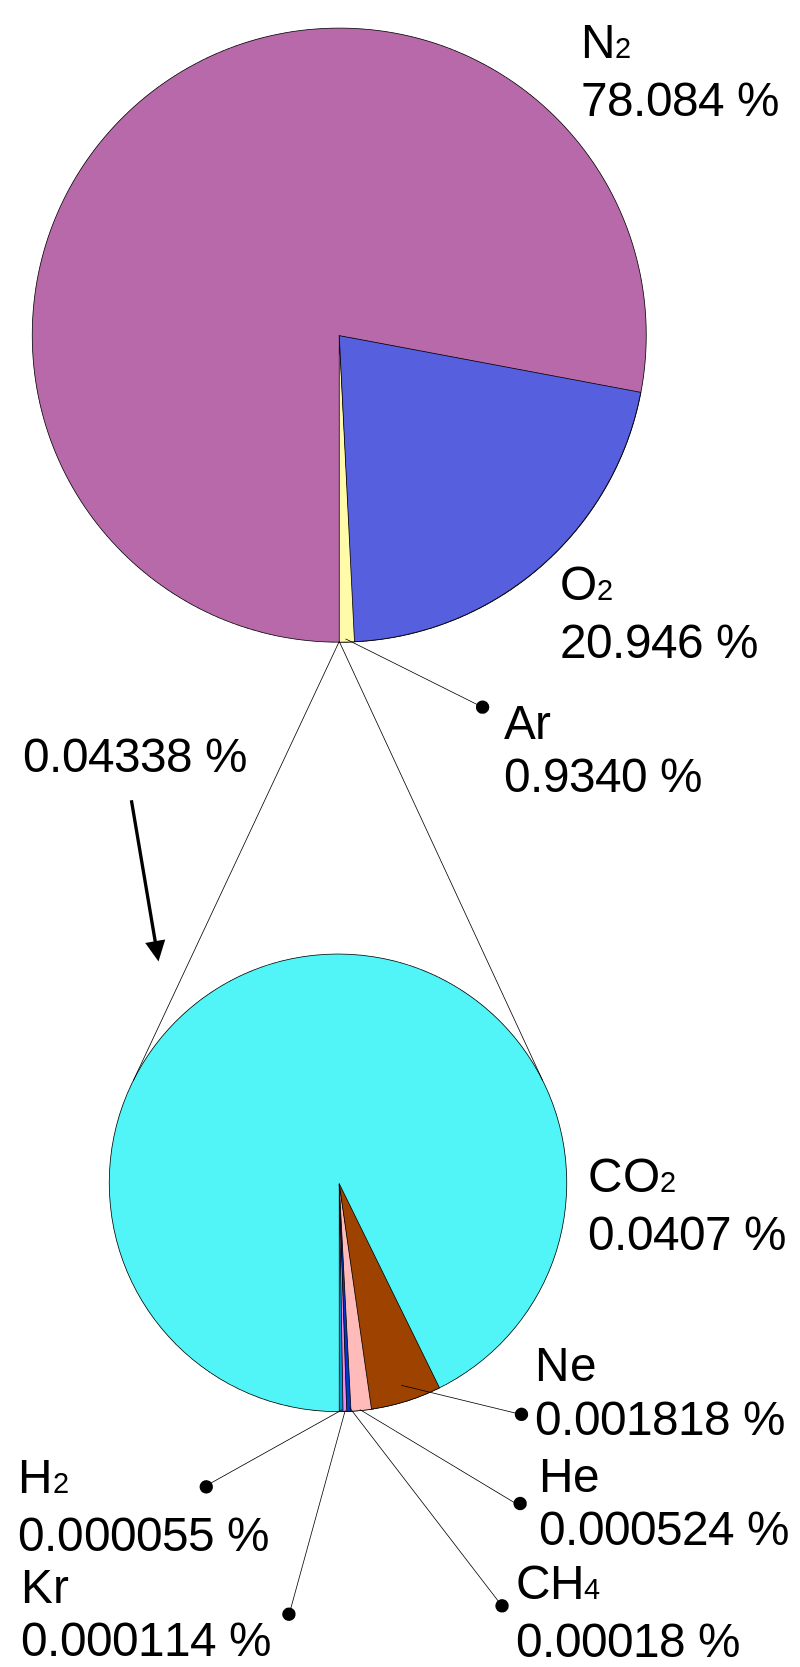 우리의 생활 지역에 따른 공기 중 산소 농도 : 네이버 블로그